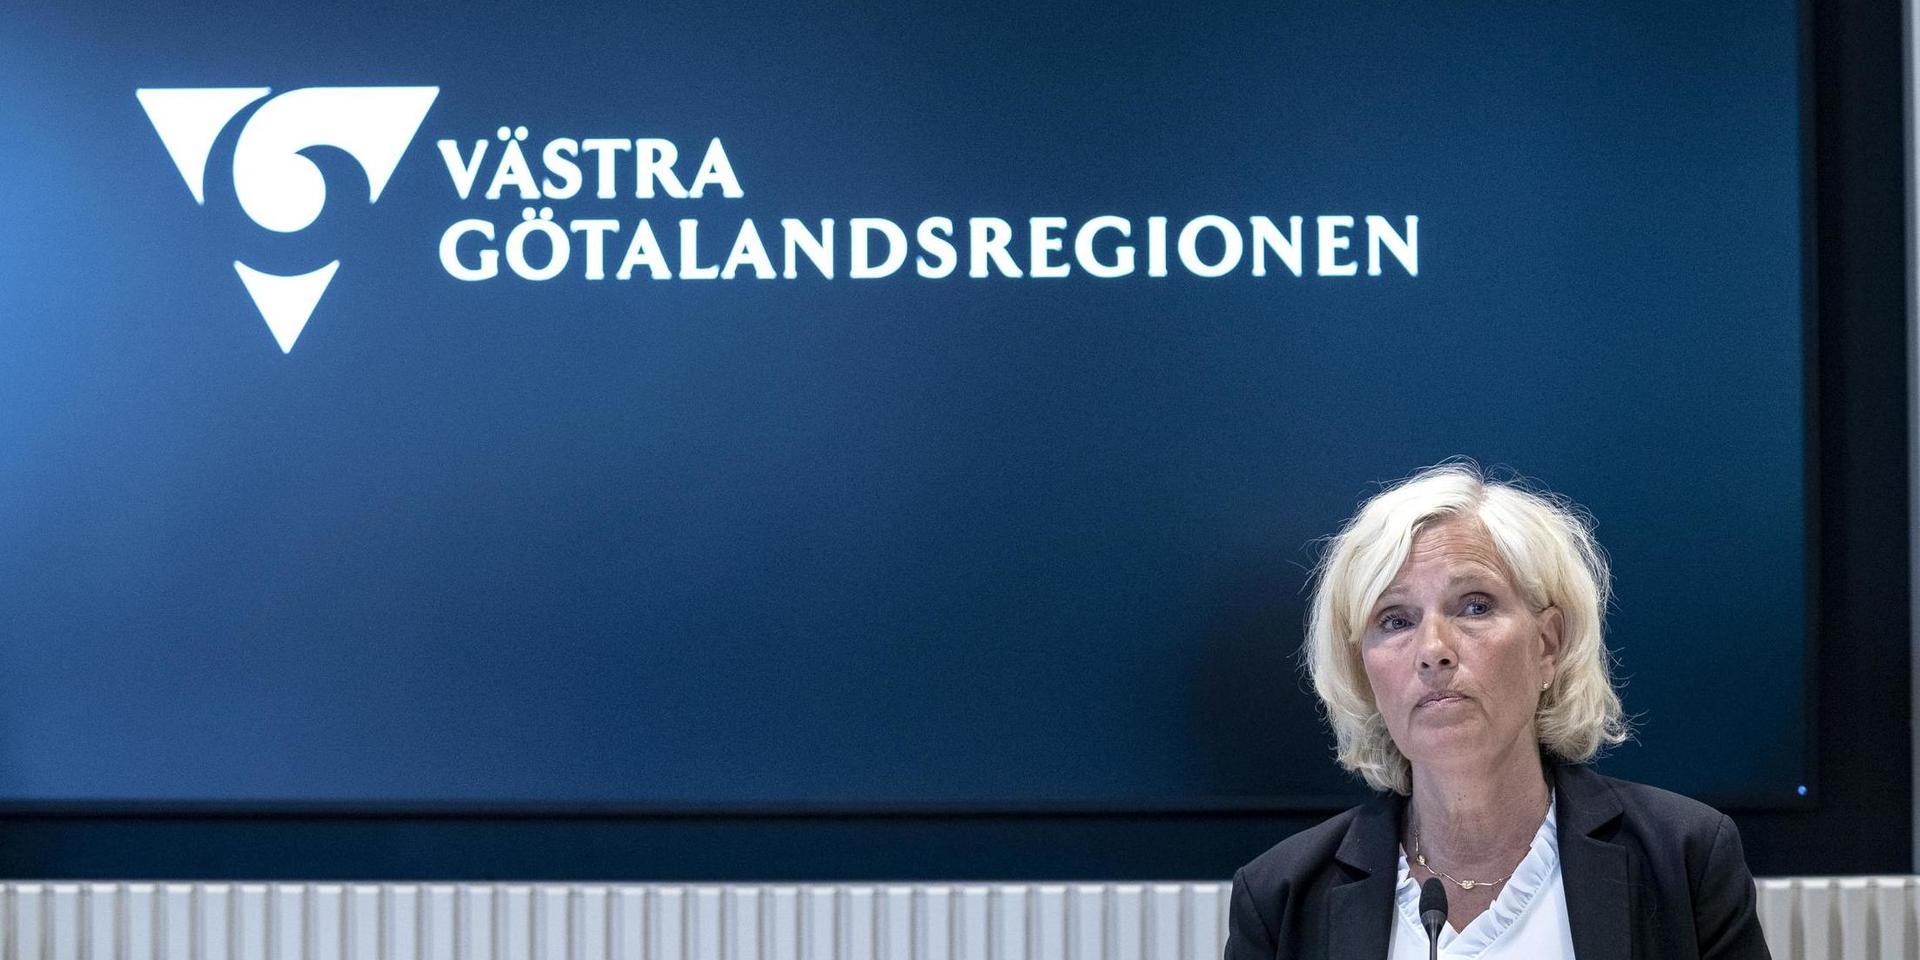 För närvarande provtas cirka 4000 personer dagligen i Västra Götaland, skriver Ann Söderström, hälso- och sjukvårdsdirektör Västra Götalandsregionen.